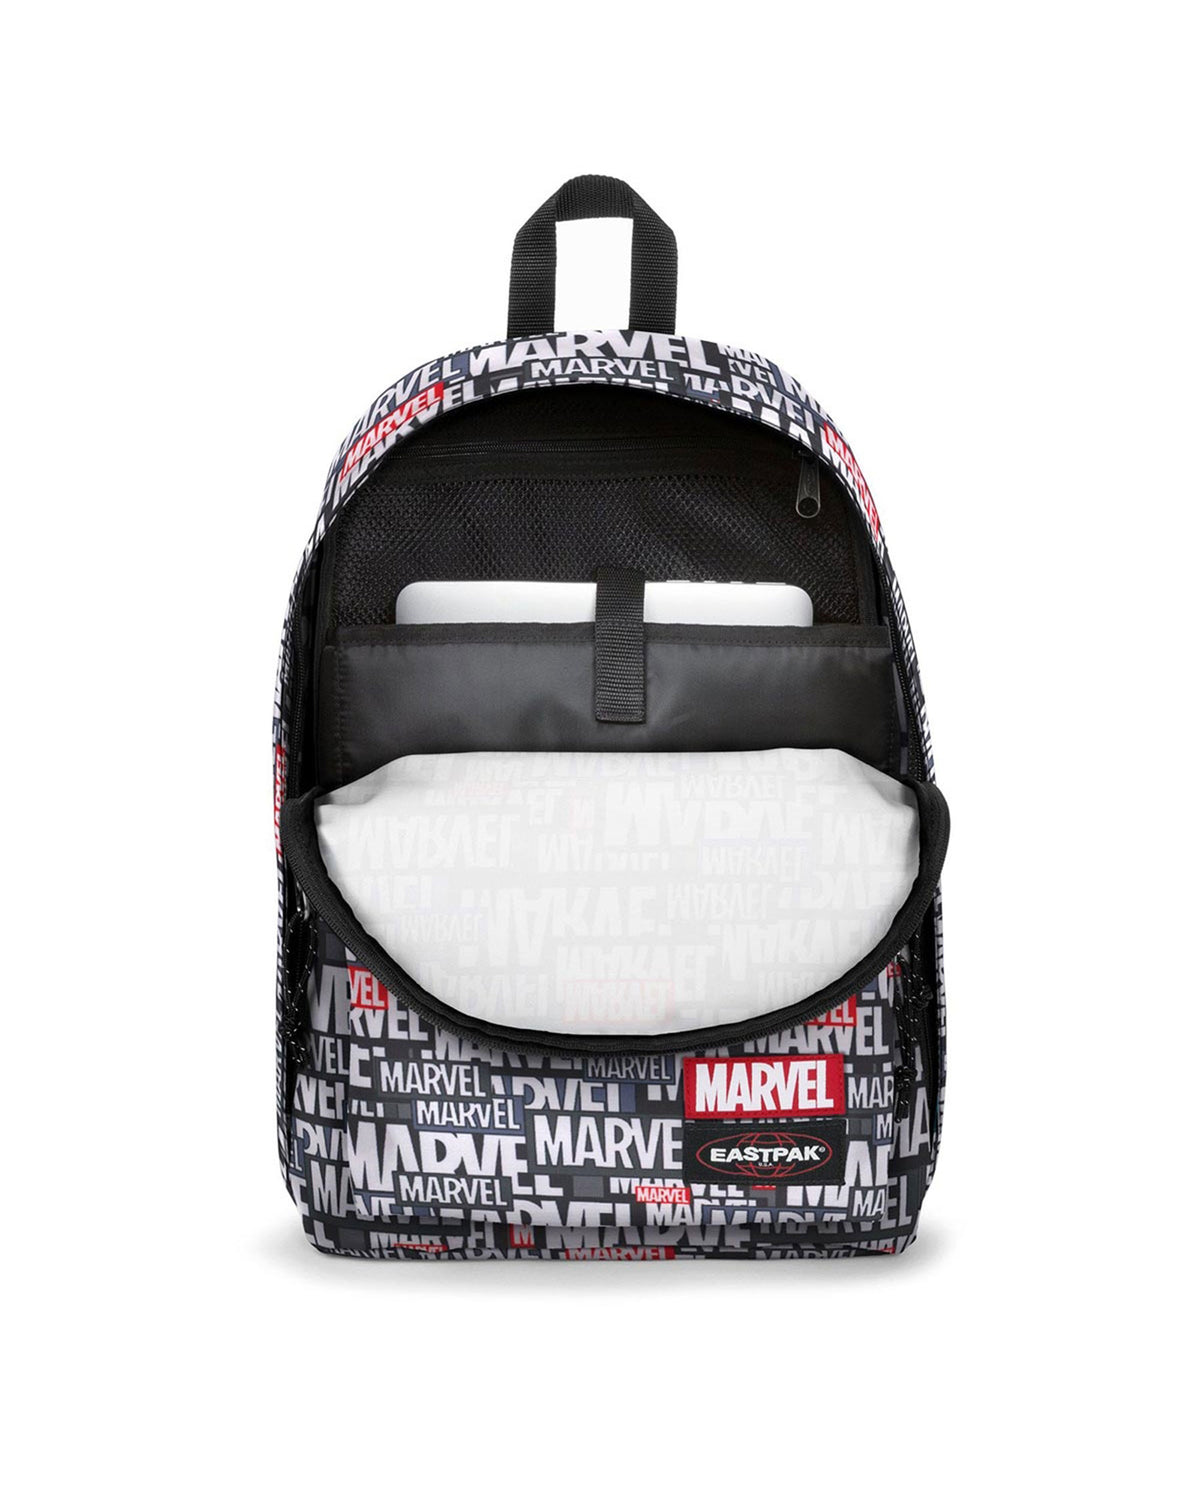 Backpack Marvel x Eastpak Out Of Office EK000767-L43